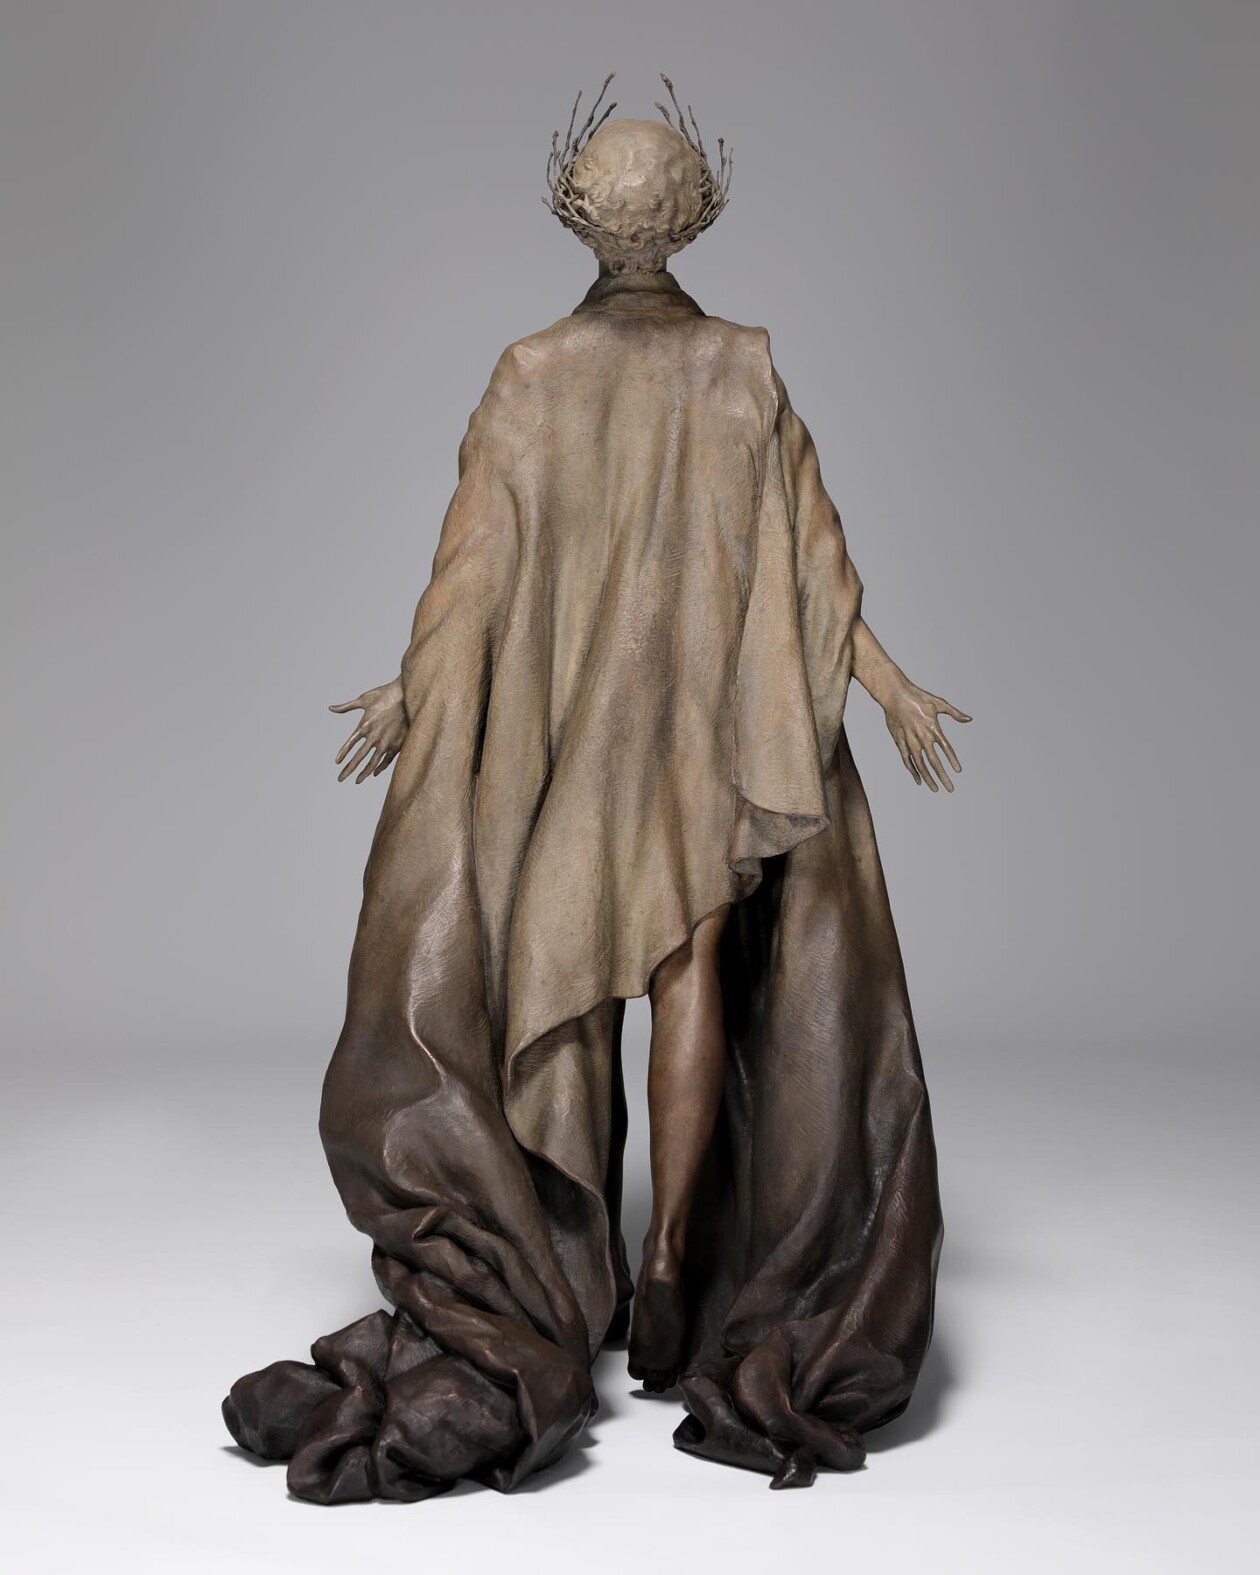 Figurative Bronze Sculptures By César Orrico (23)